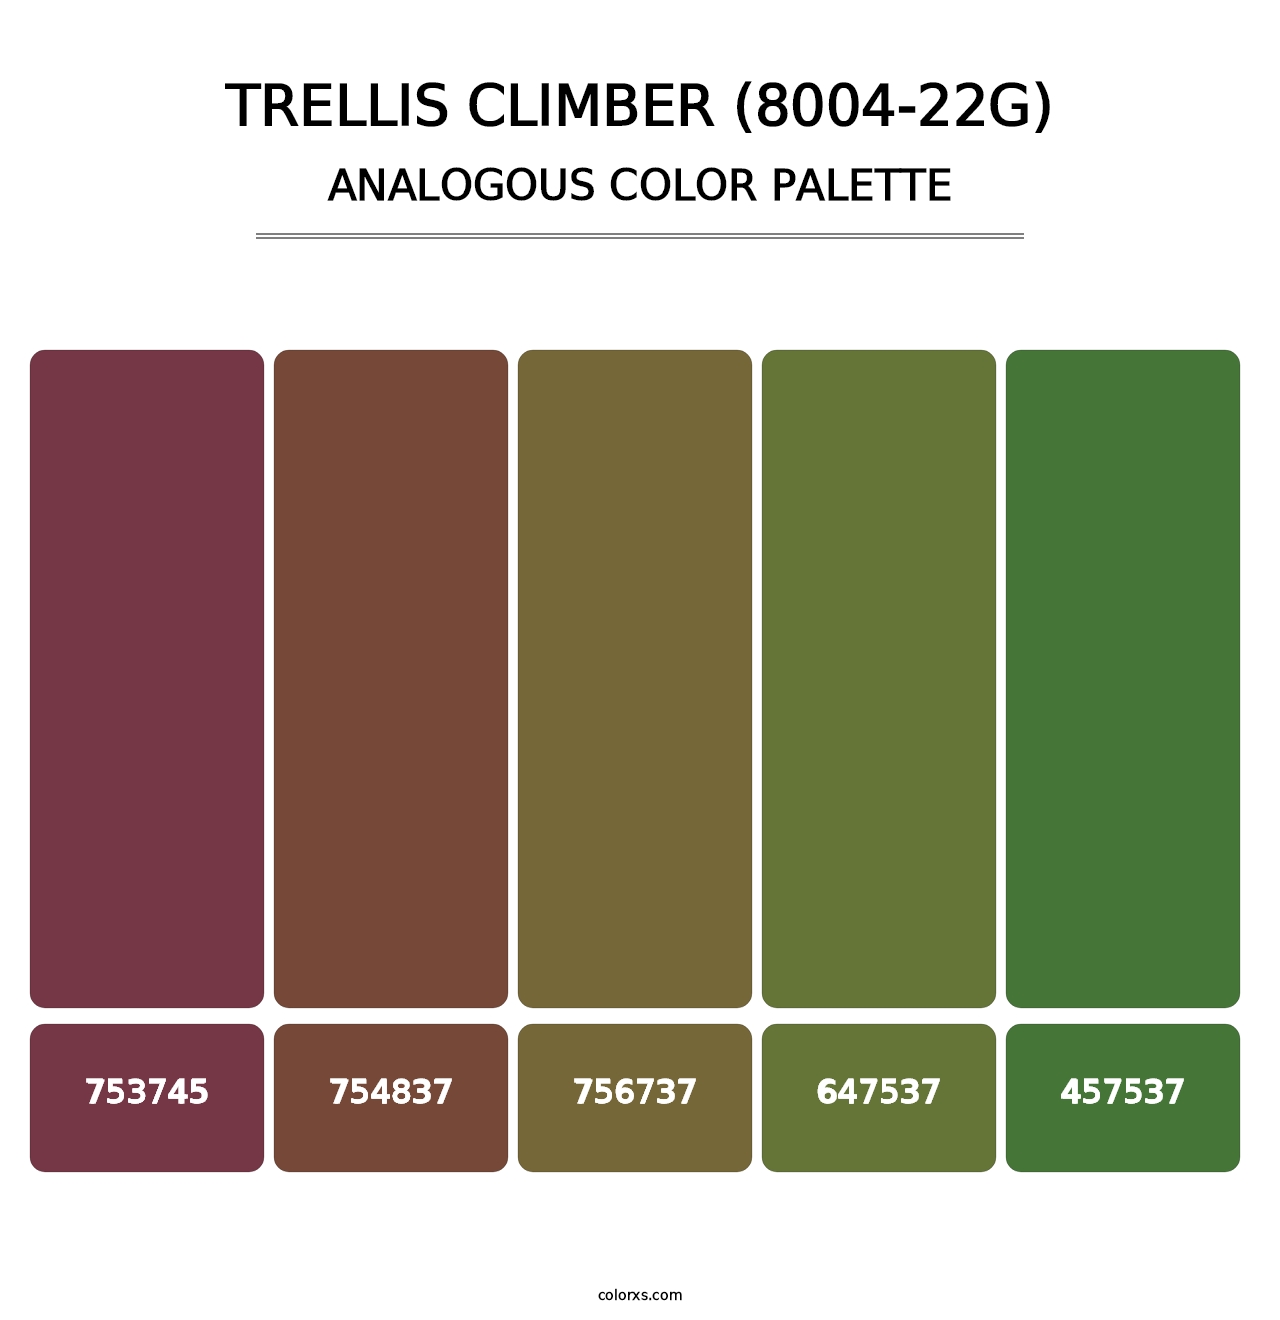 Trellis Climber (8004-22G) - Analogous Color Palette